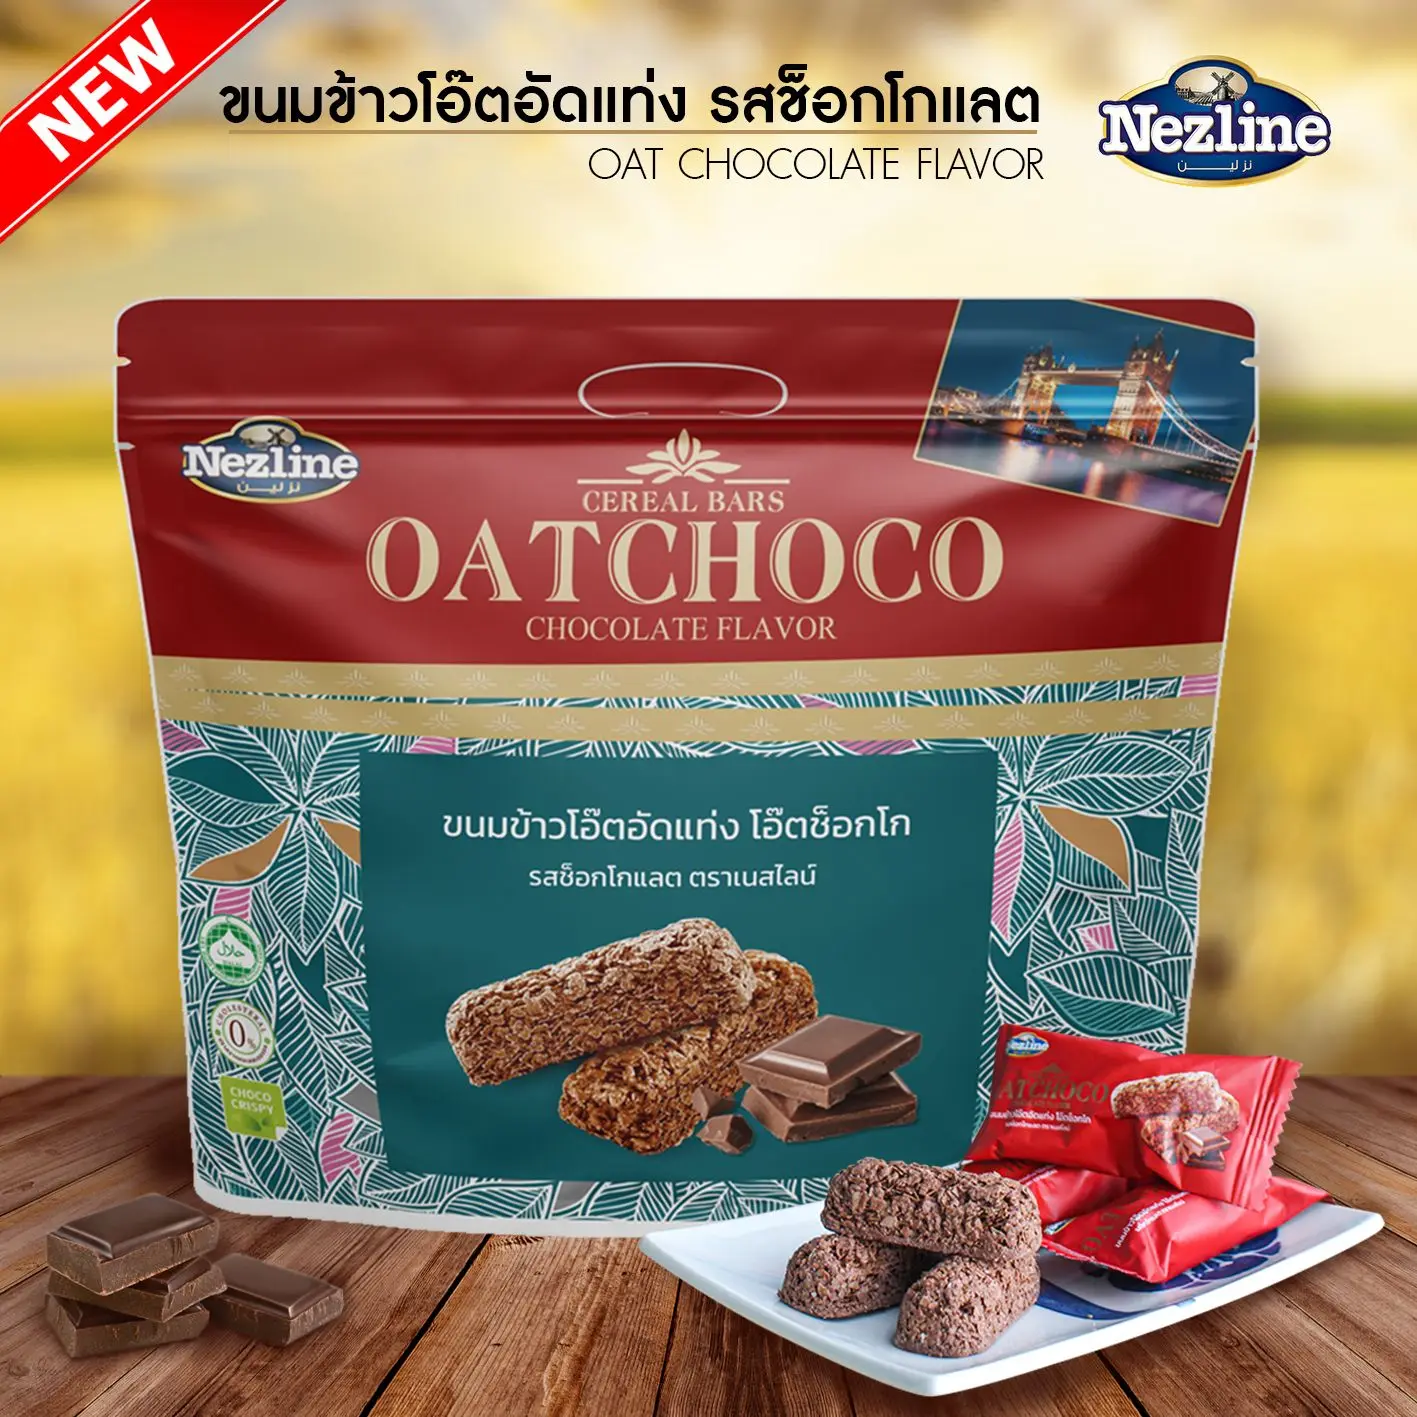 ขนมข้าวโอ๊ตอัดแท่ง รสช็อคโกแลต ตราเนสไลน์ 400 กรัม (Oat choco Chocolate flavor Nezline brand)